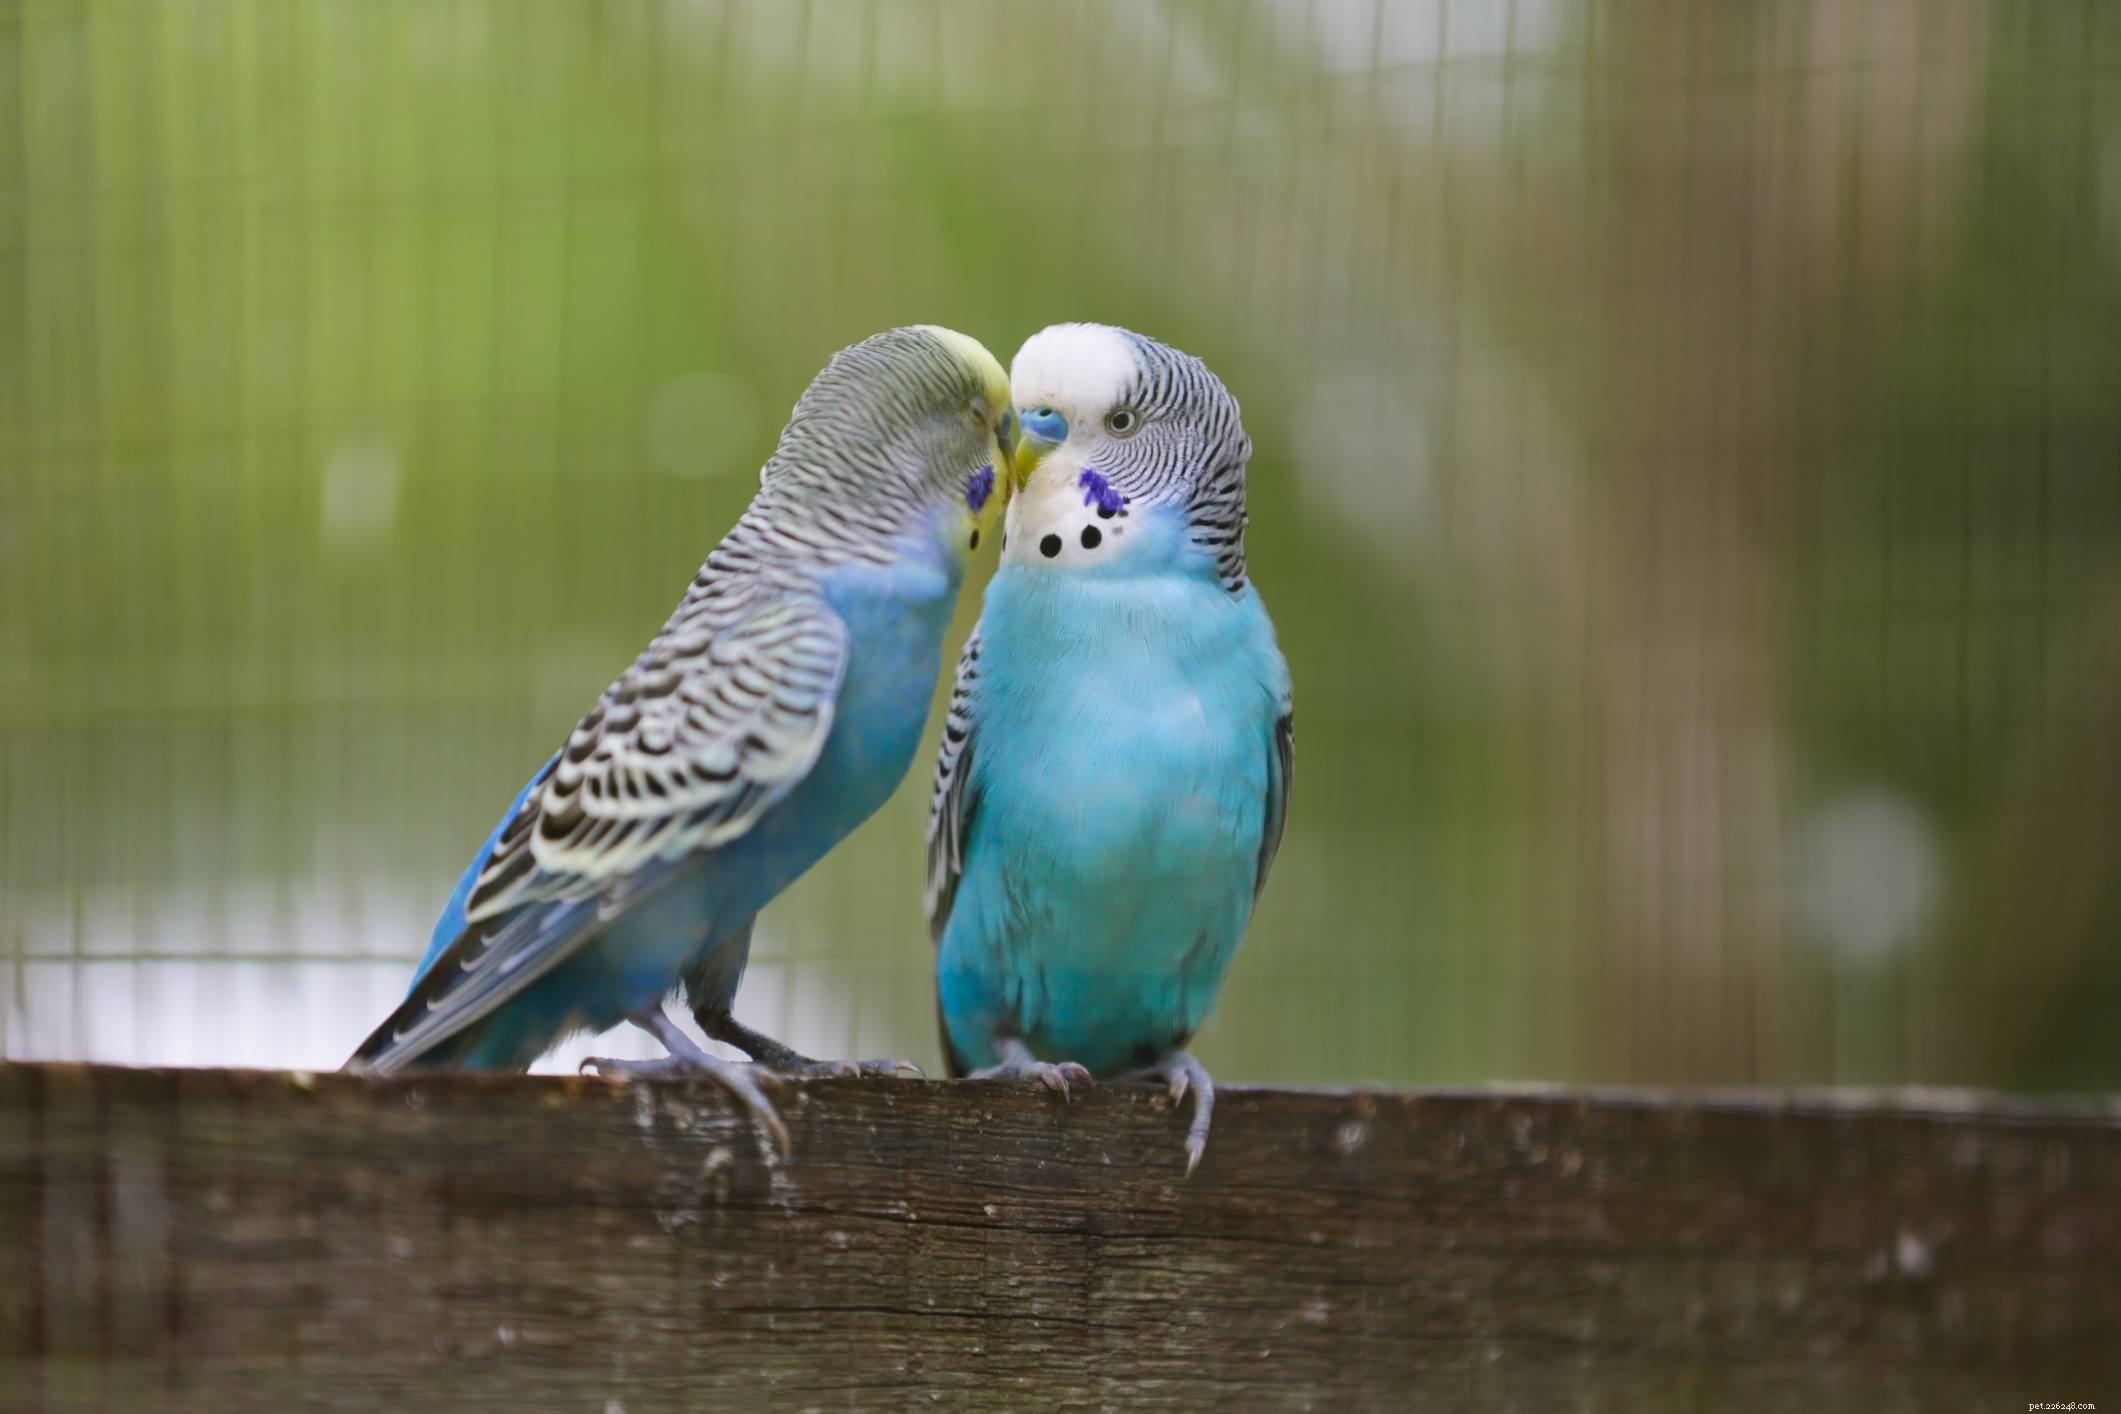 Les 5 oiseaux les plus intelligents que vous pouvez garder comme animaux de compagnie